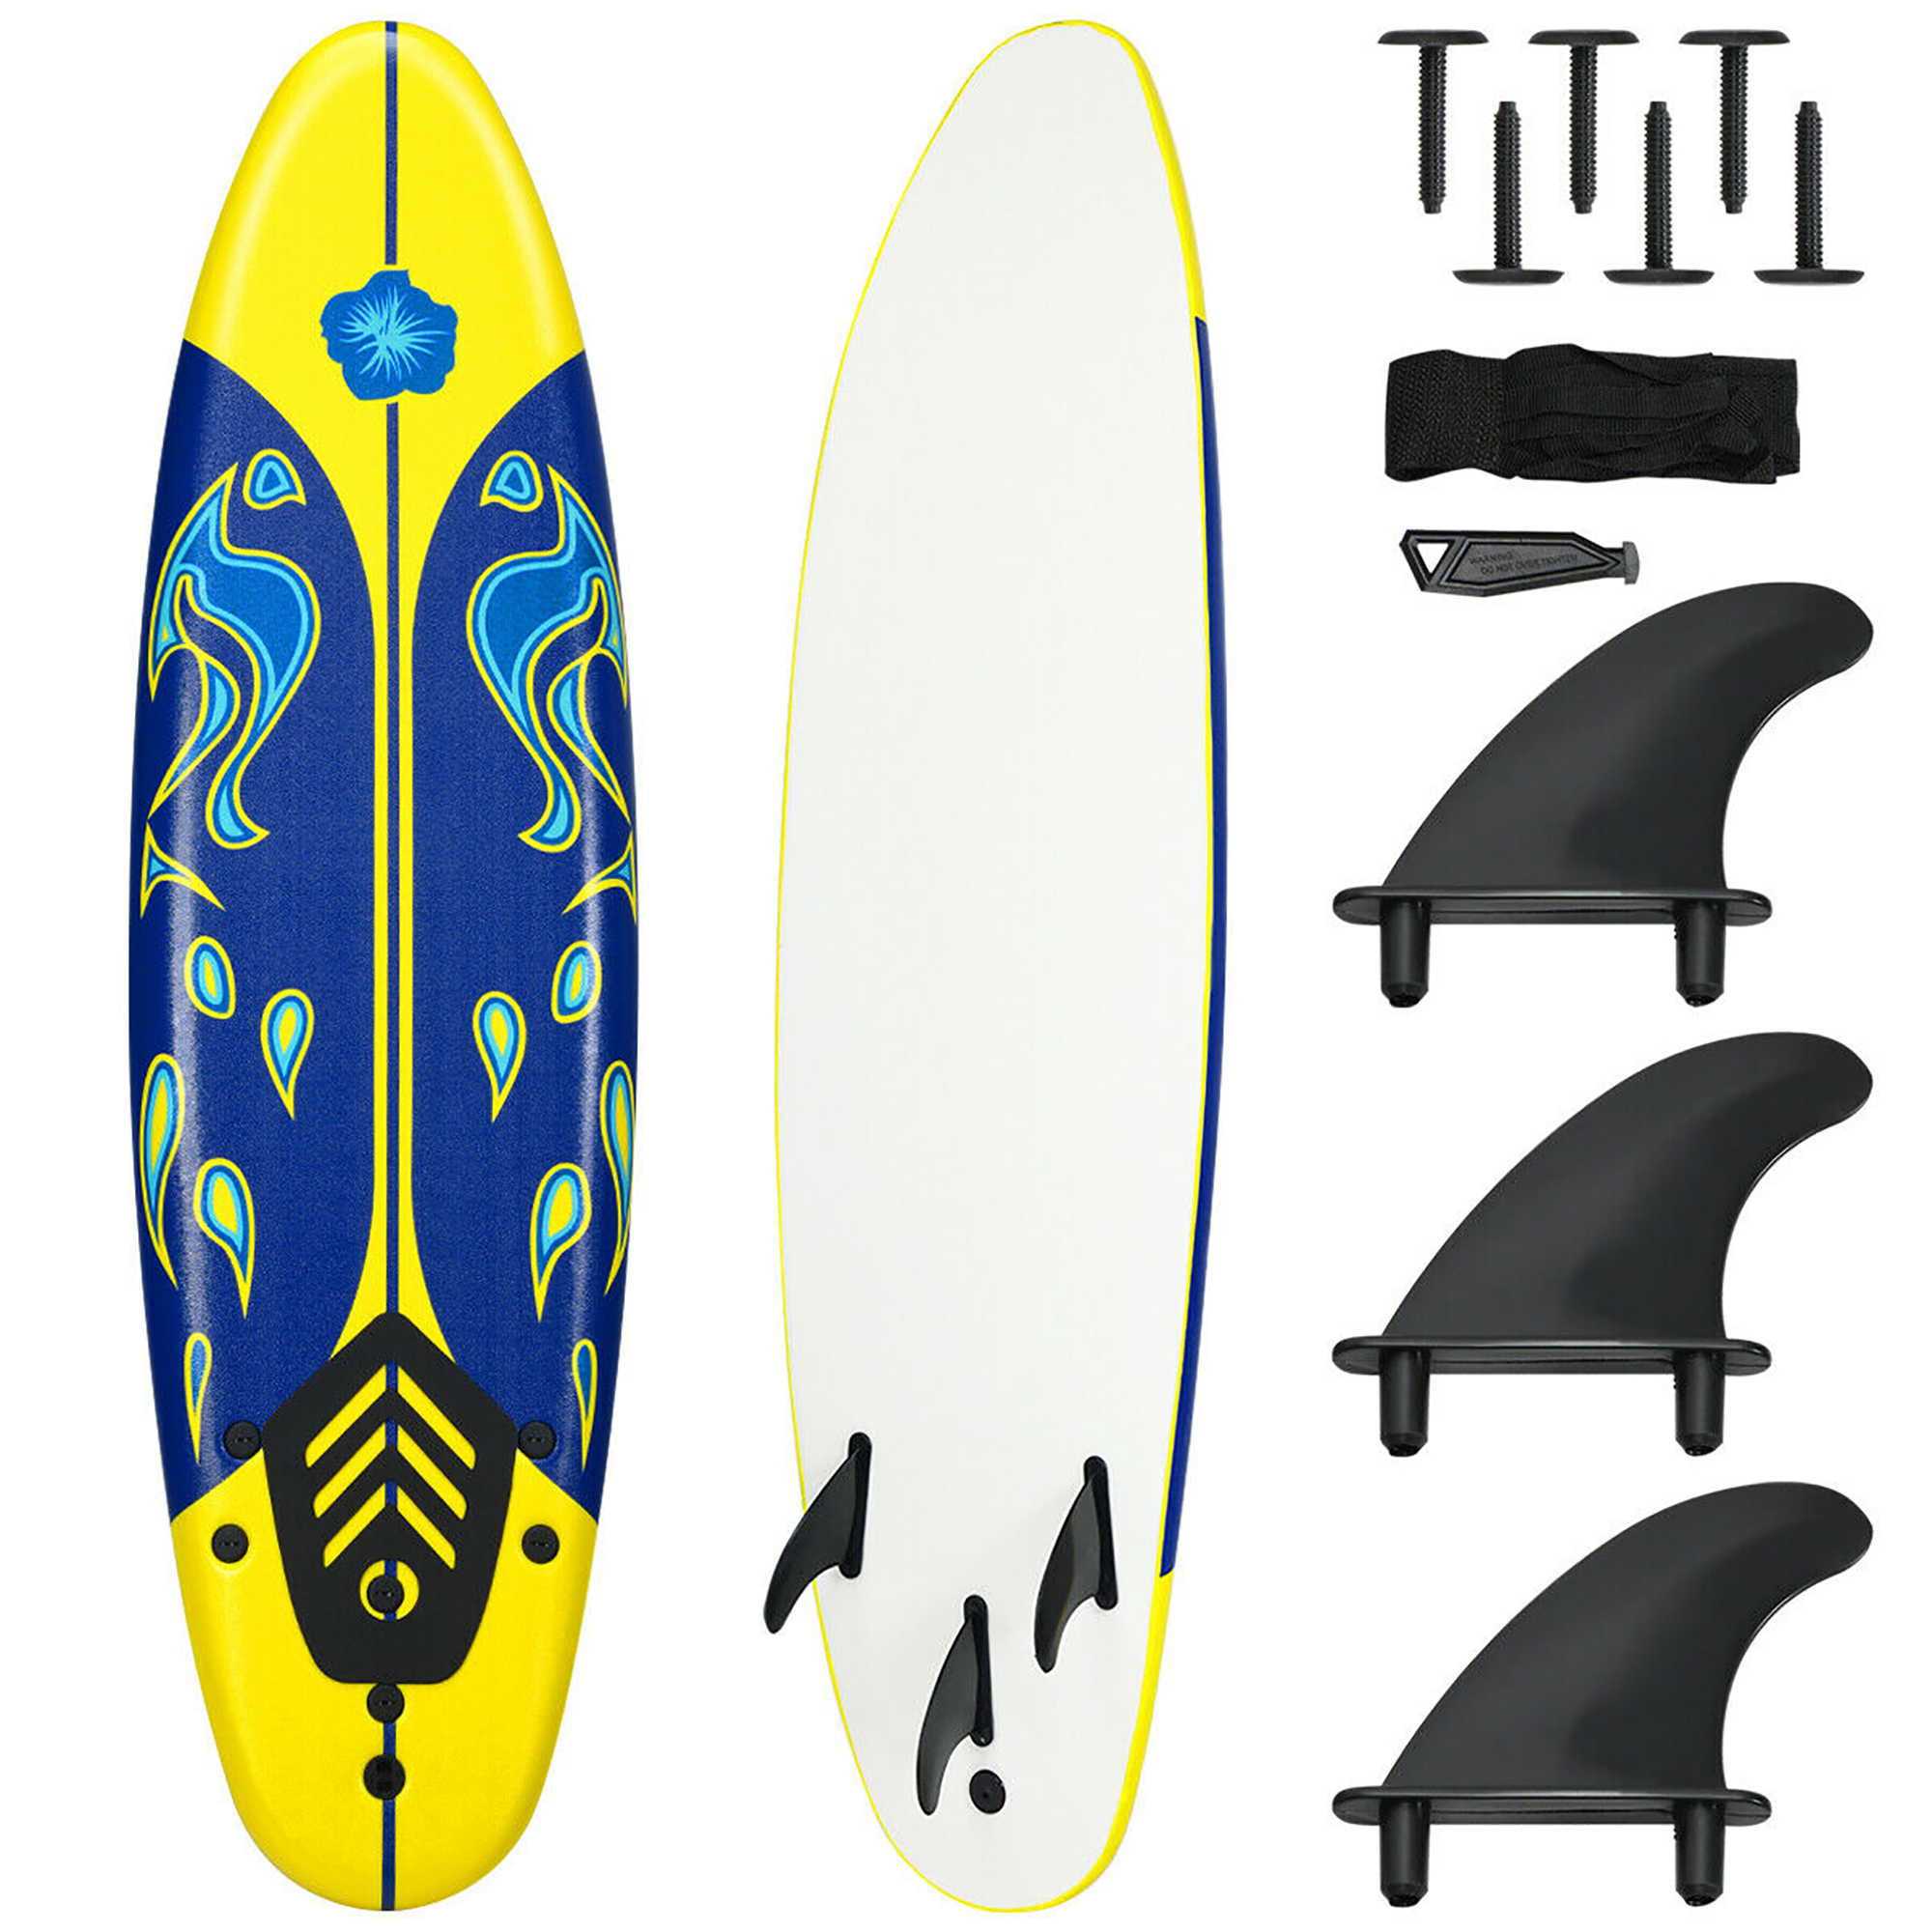 Costway 6' Surfboard Foamie Body Surfing Board W/3  Fins & Leash for Kids Adults Yellow - image 1 of 10